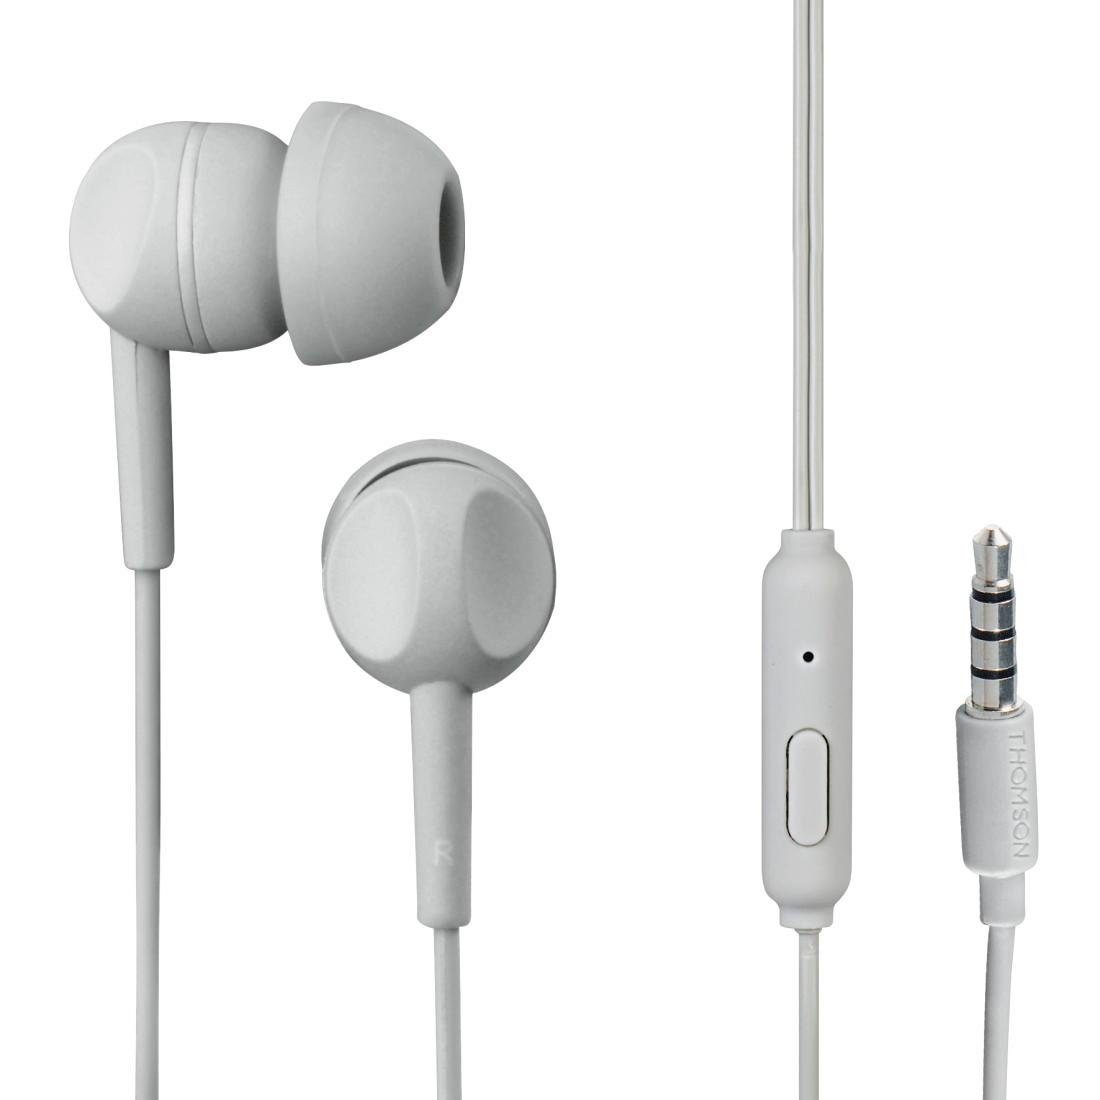 Kopfhörer Rufannahmetaste) Headset, und Grau In-Ear-Kopfhörer In (Geräuschisolierung, Mikrofon, mit Ear Geräuschunterdrückung, Kabel Telefonfunktion, Thomson